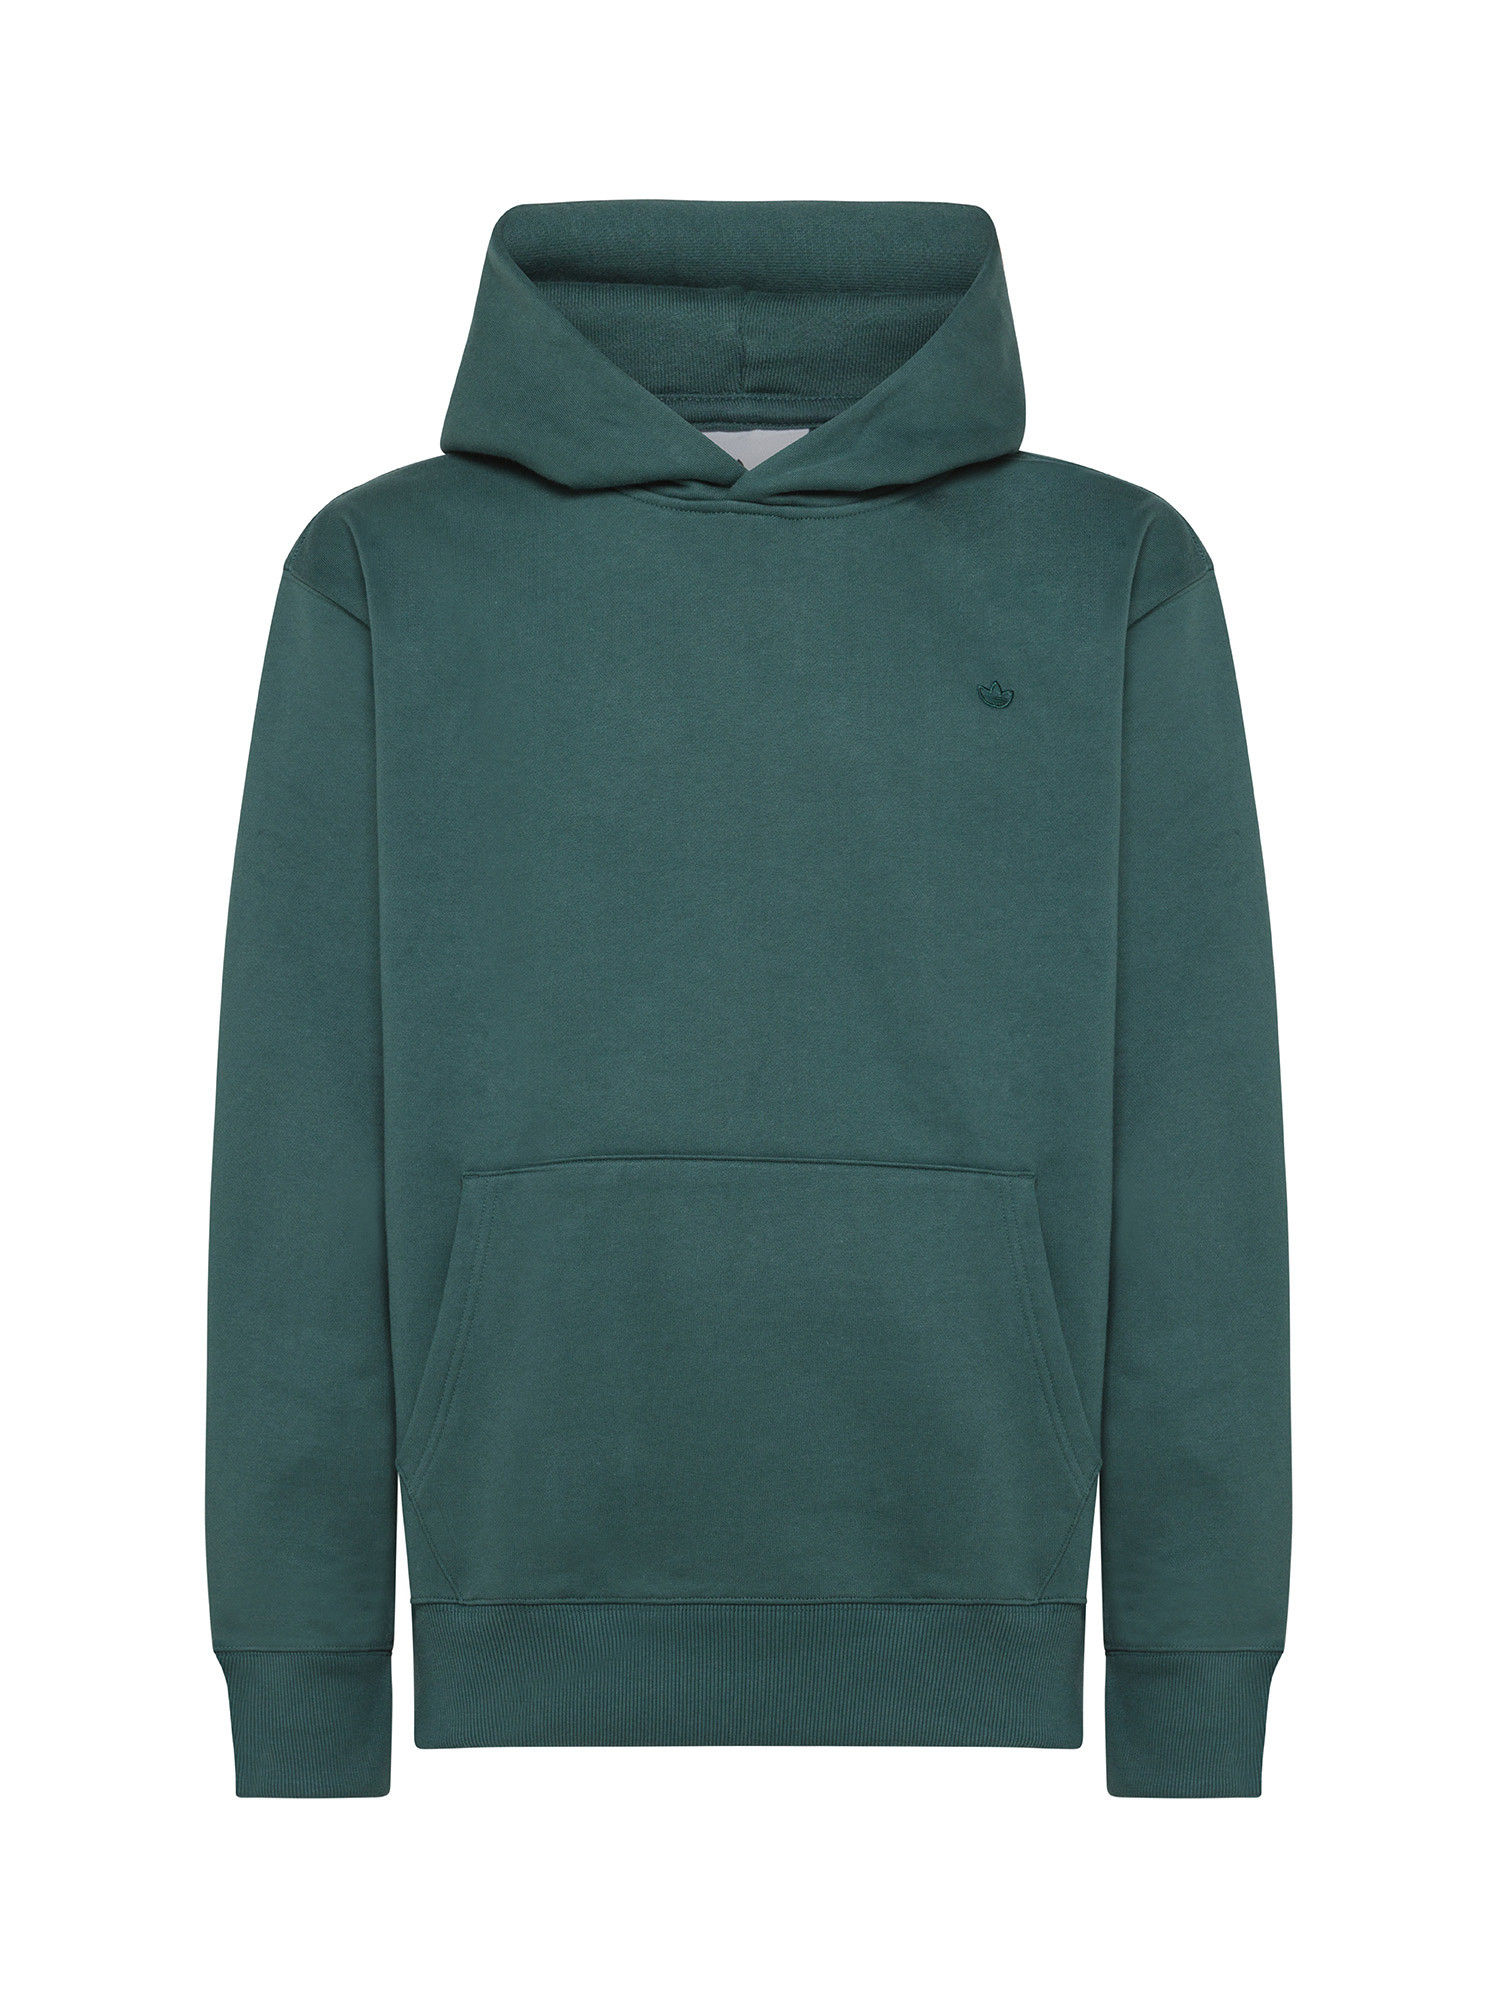 Adidas - Hooded sweatshirt adicolor, Dark Green, large image number 0